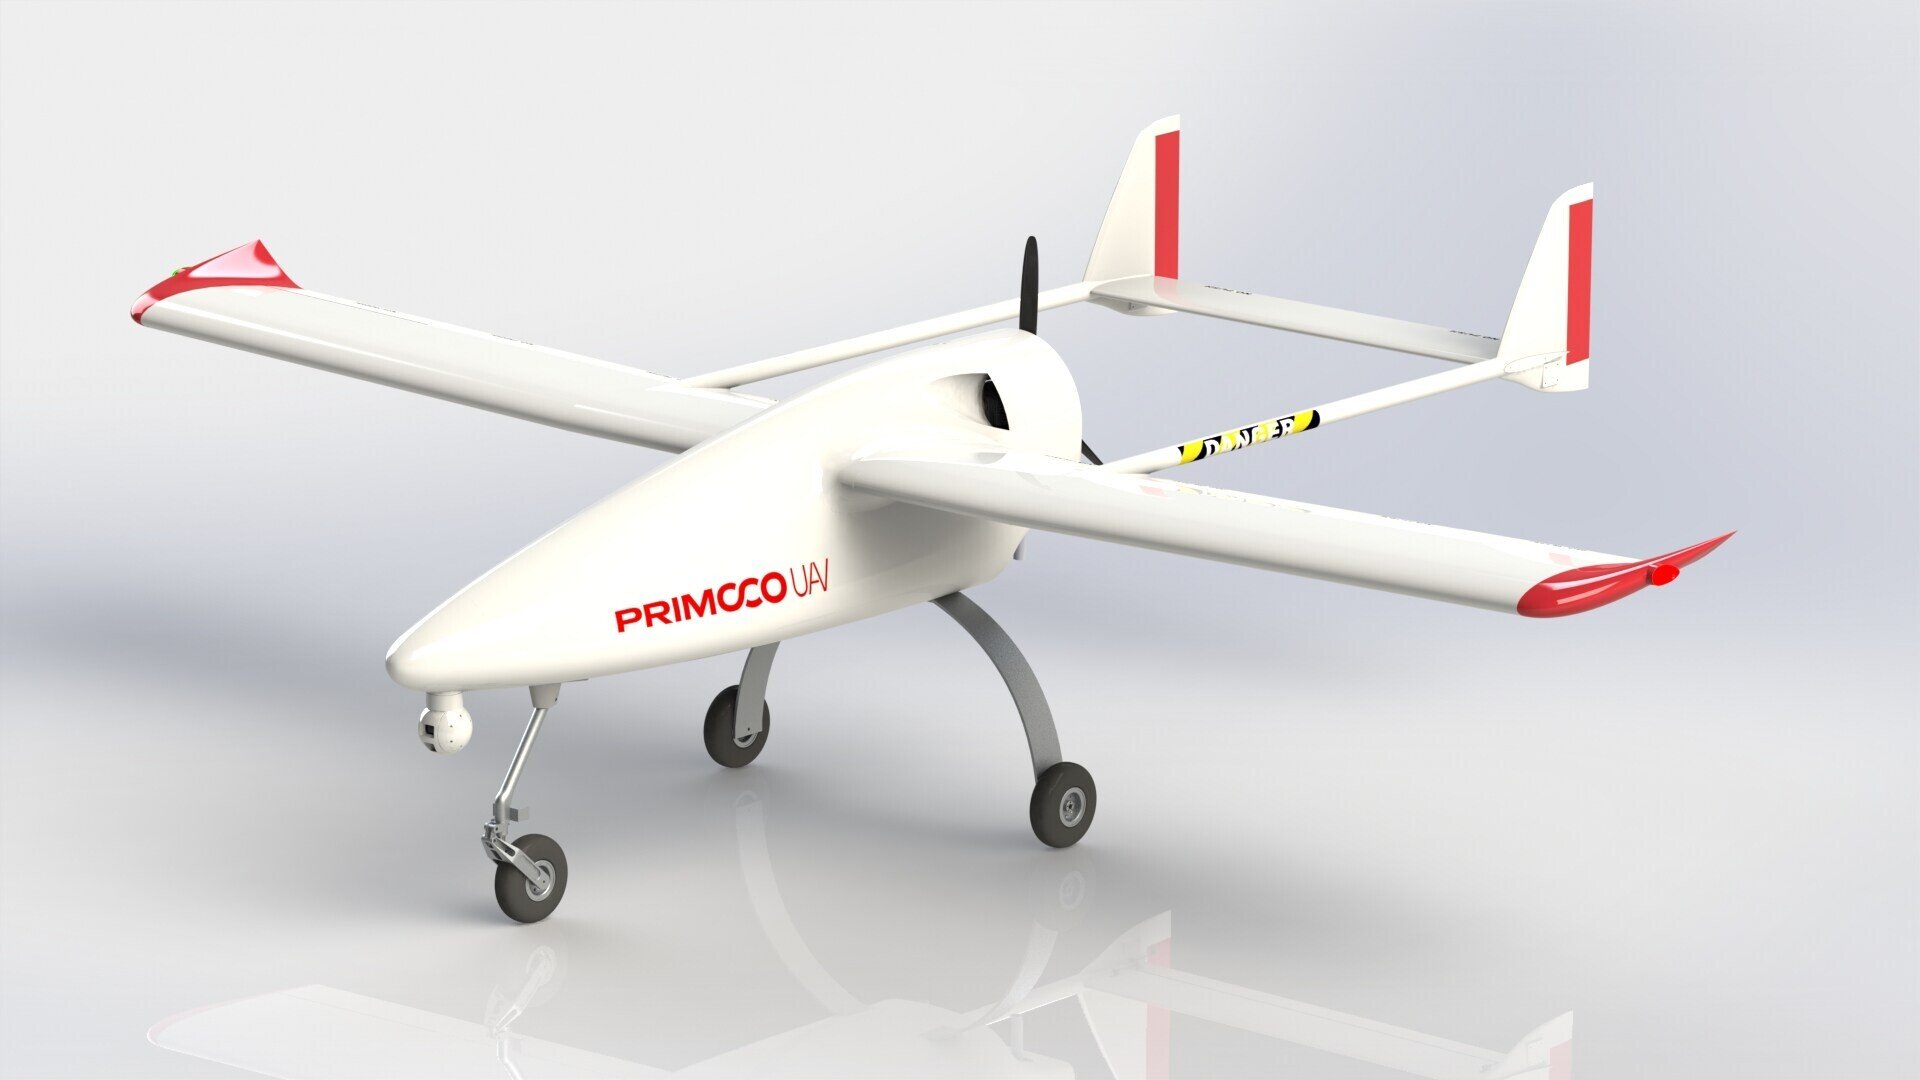 Rekordní zisk pro Primoco UAV. Tržby letos rostly více než trojnásobně